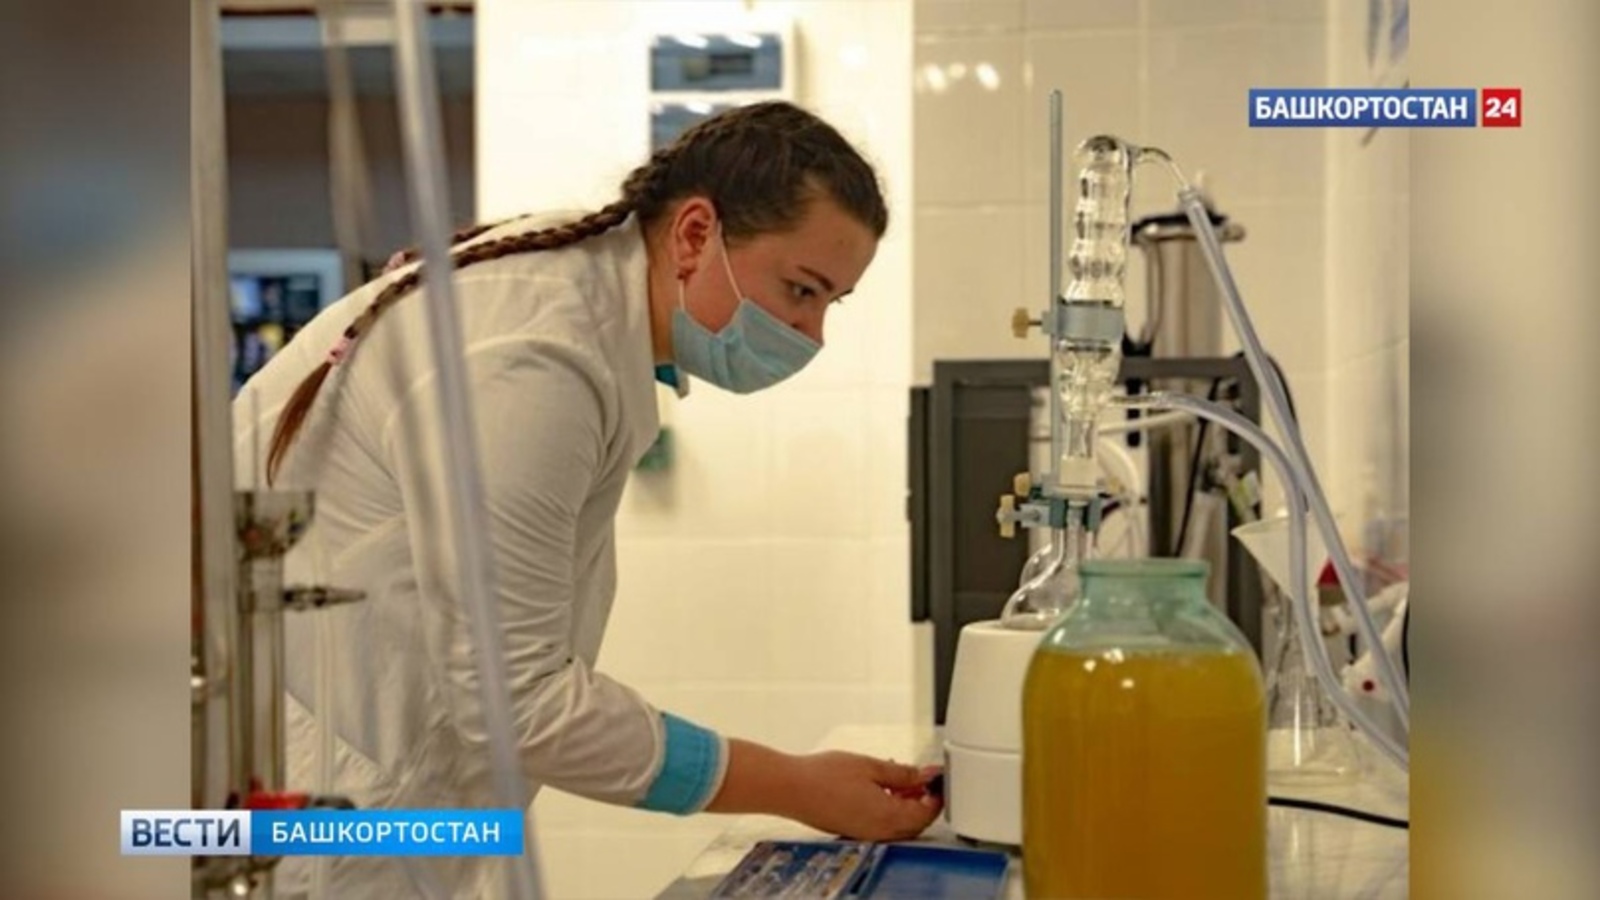 В университете Башкирии открылась новая лаборатория по контролю качества воды